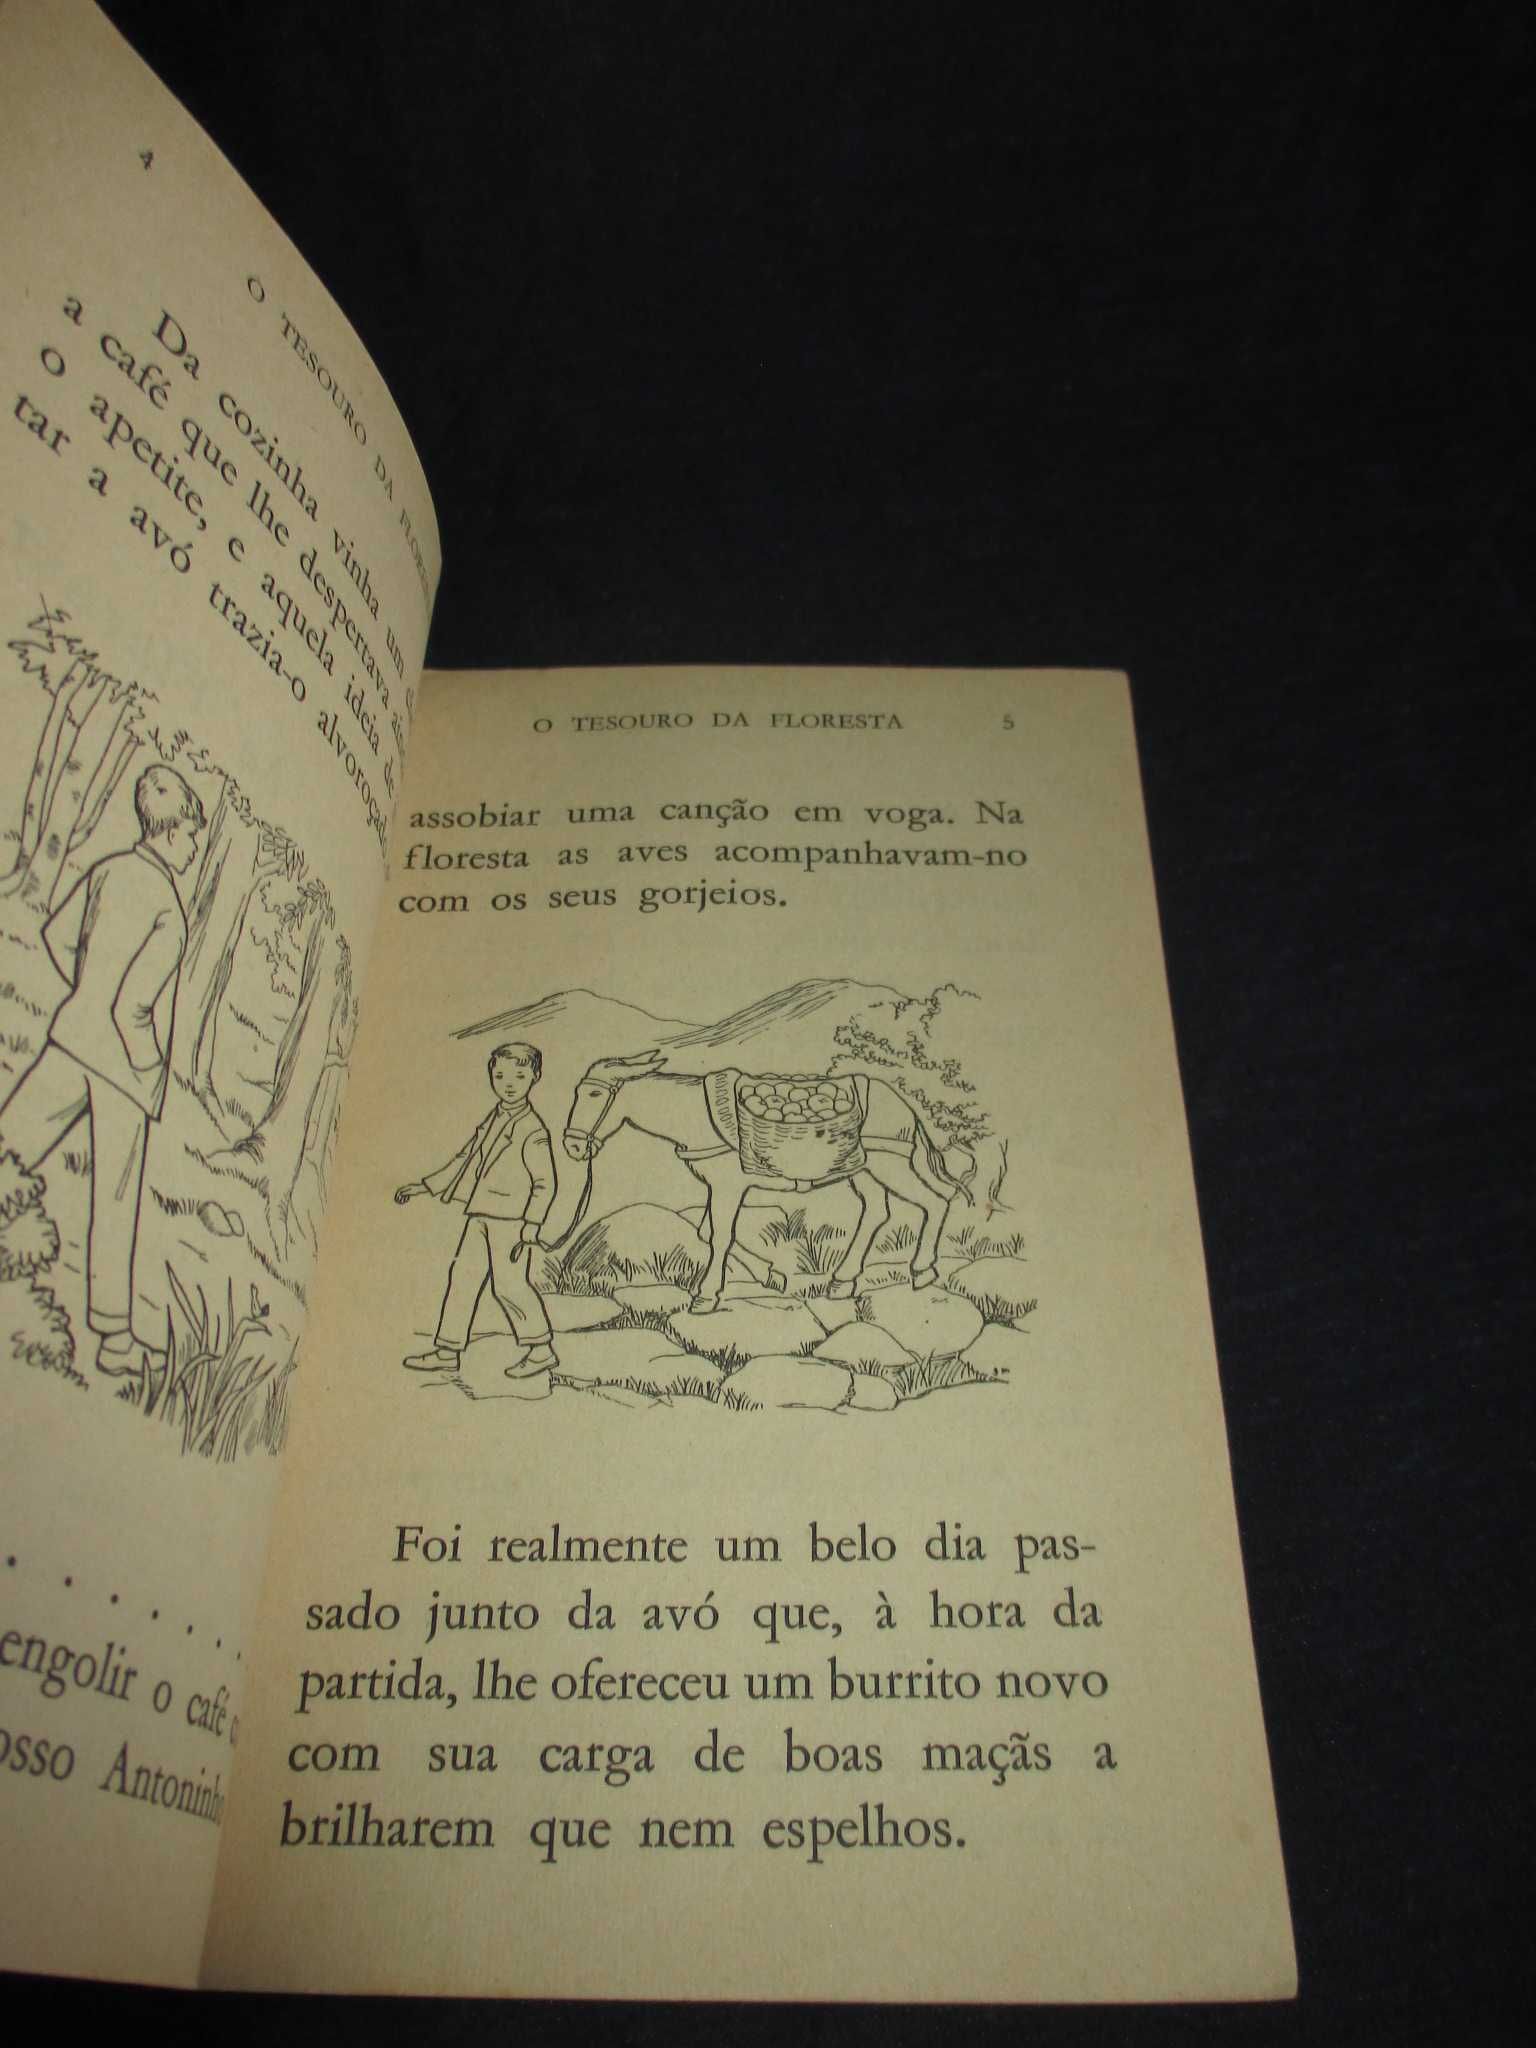 Livros Colecção Carochinha Salomé de Almeida Civilização